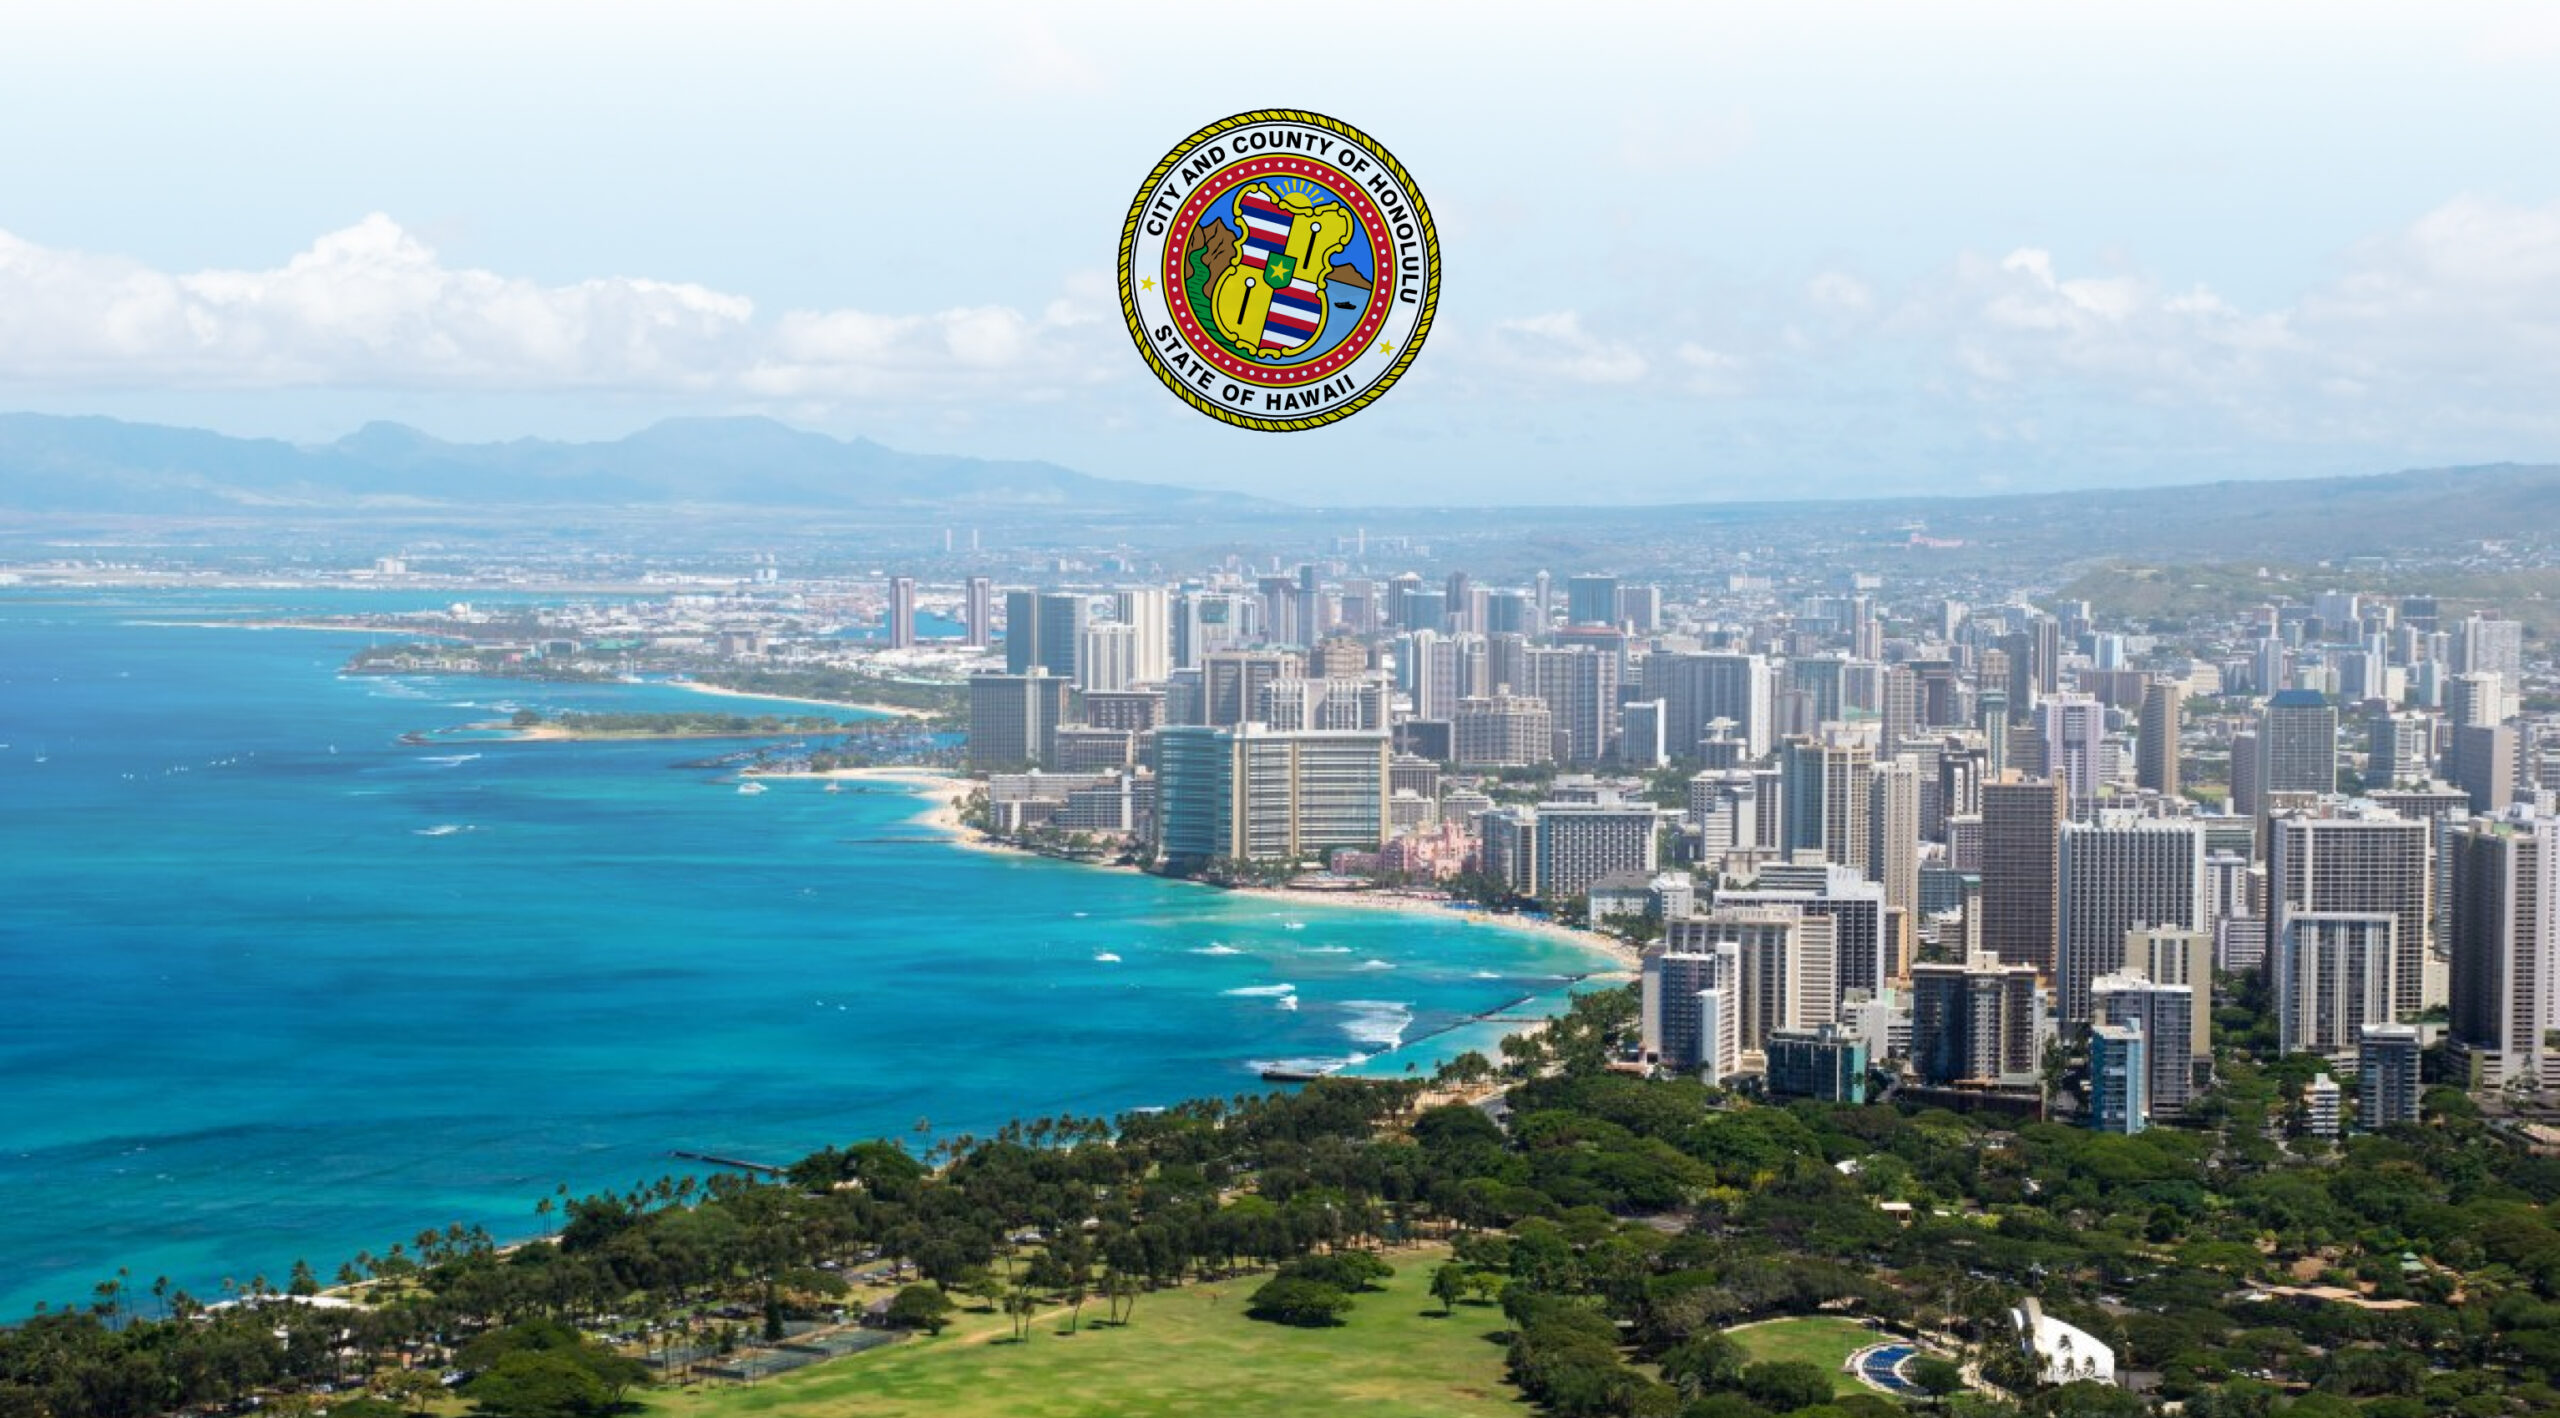 Honolulu launch CommunityScale Housing Study